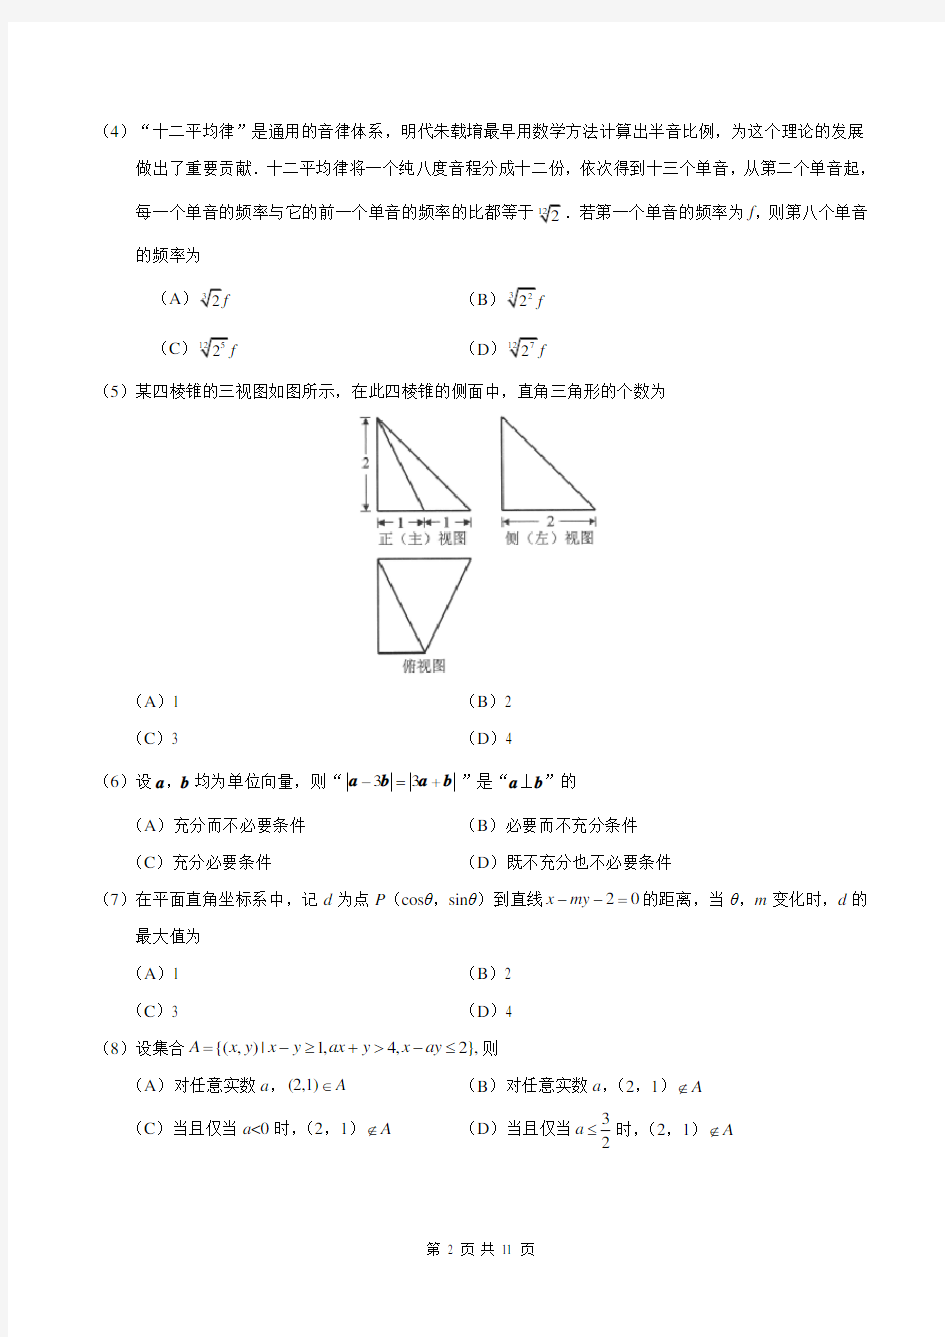 (完整版)2018年北京市高考理科数学试题及答案